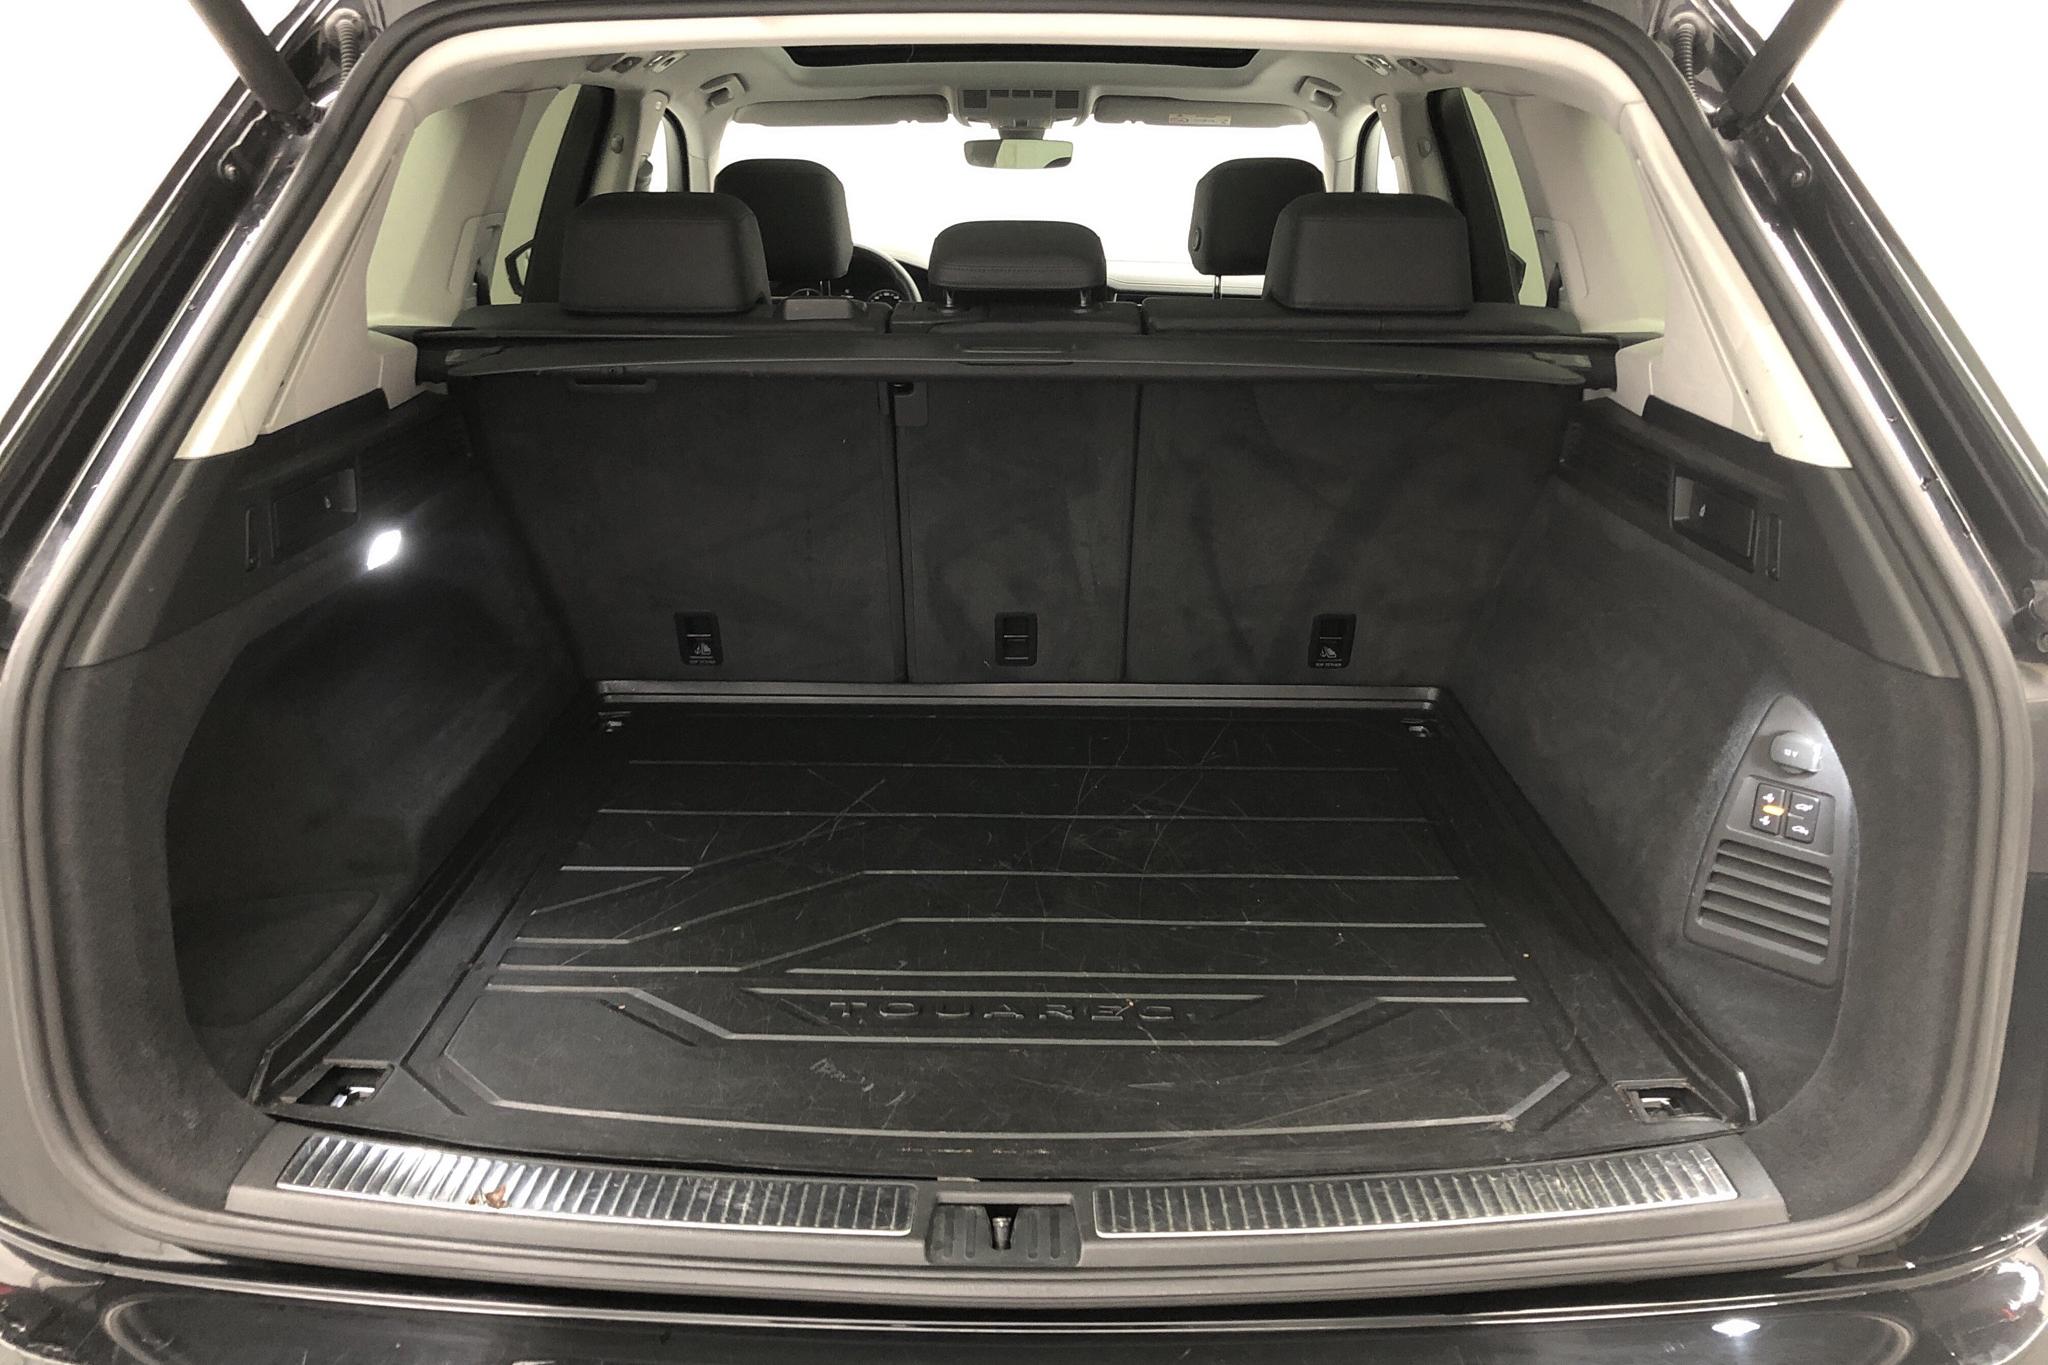 VW Touareg V6 TDI 4Motion (286hk) - 8 942 mil - Automat - svart - 2019